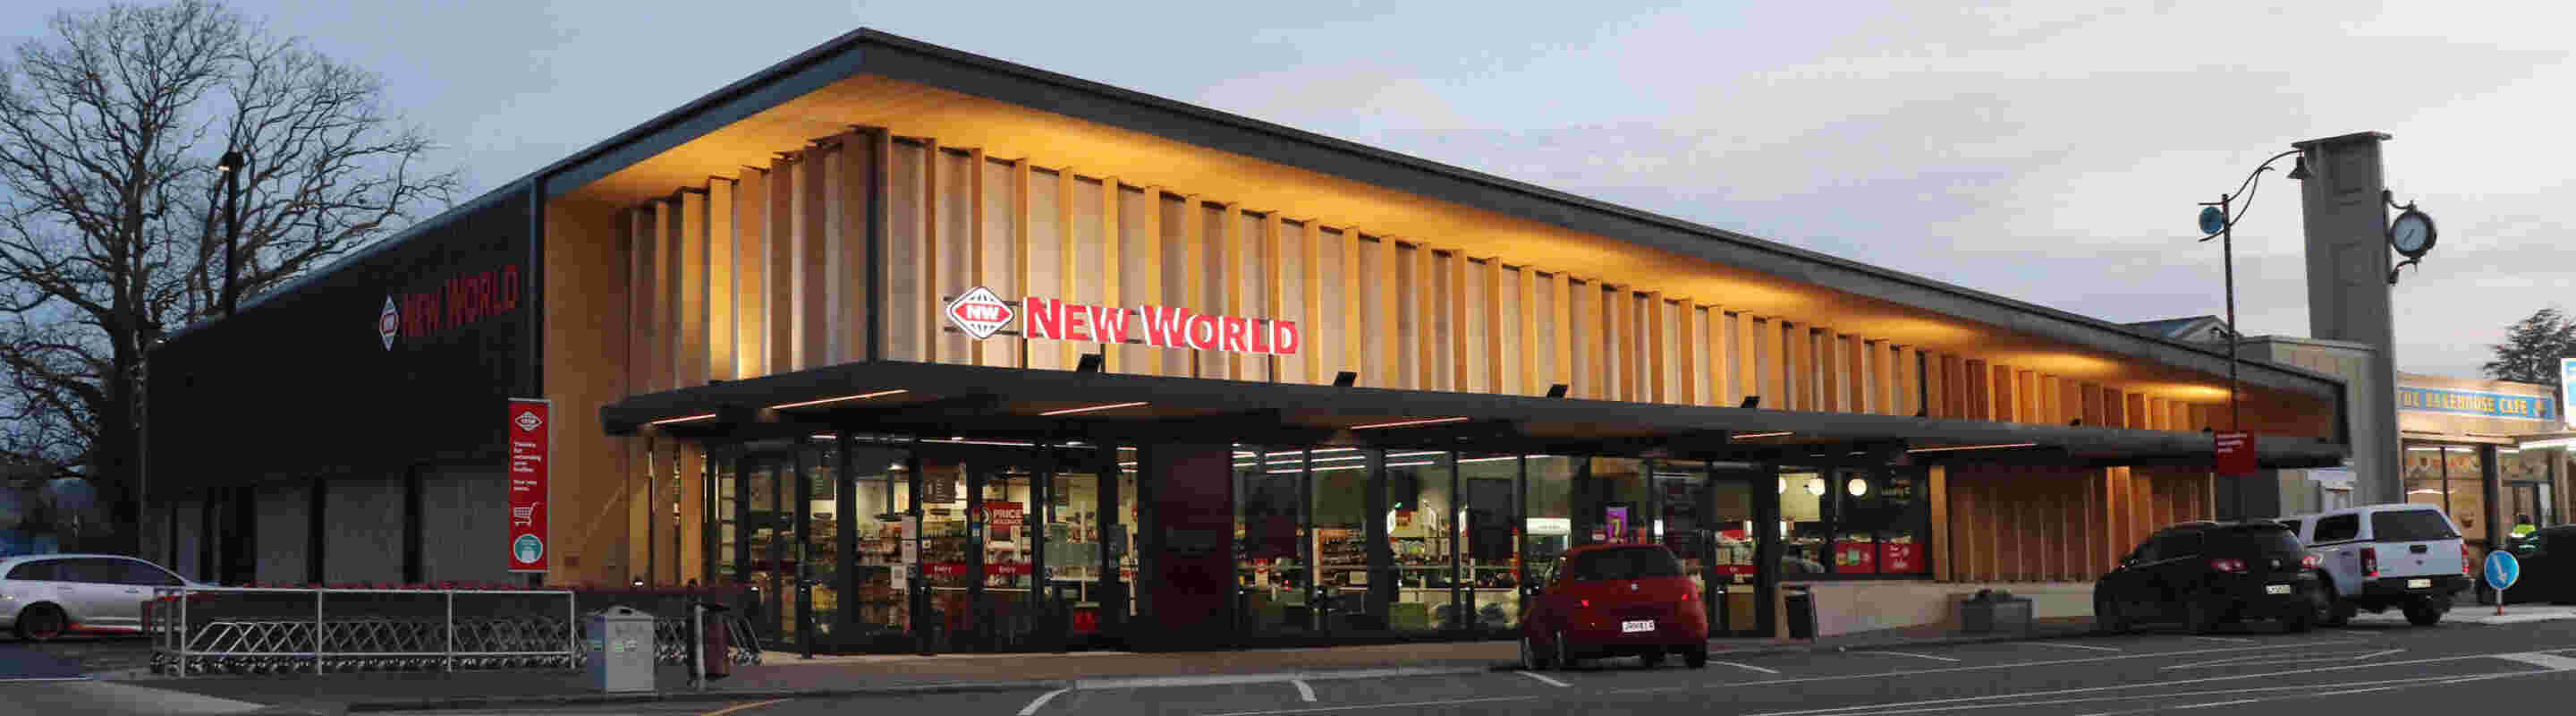 New World Store